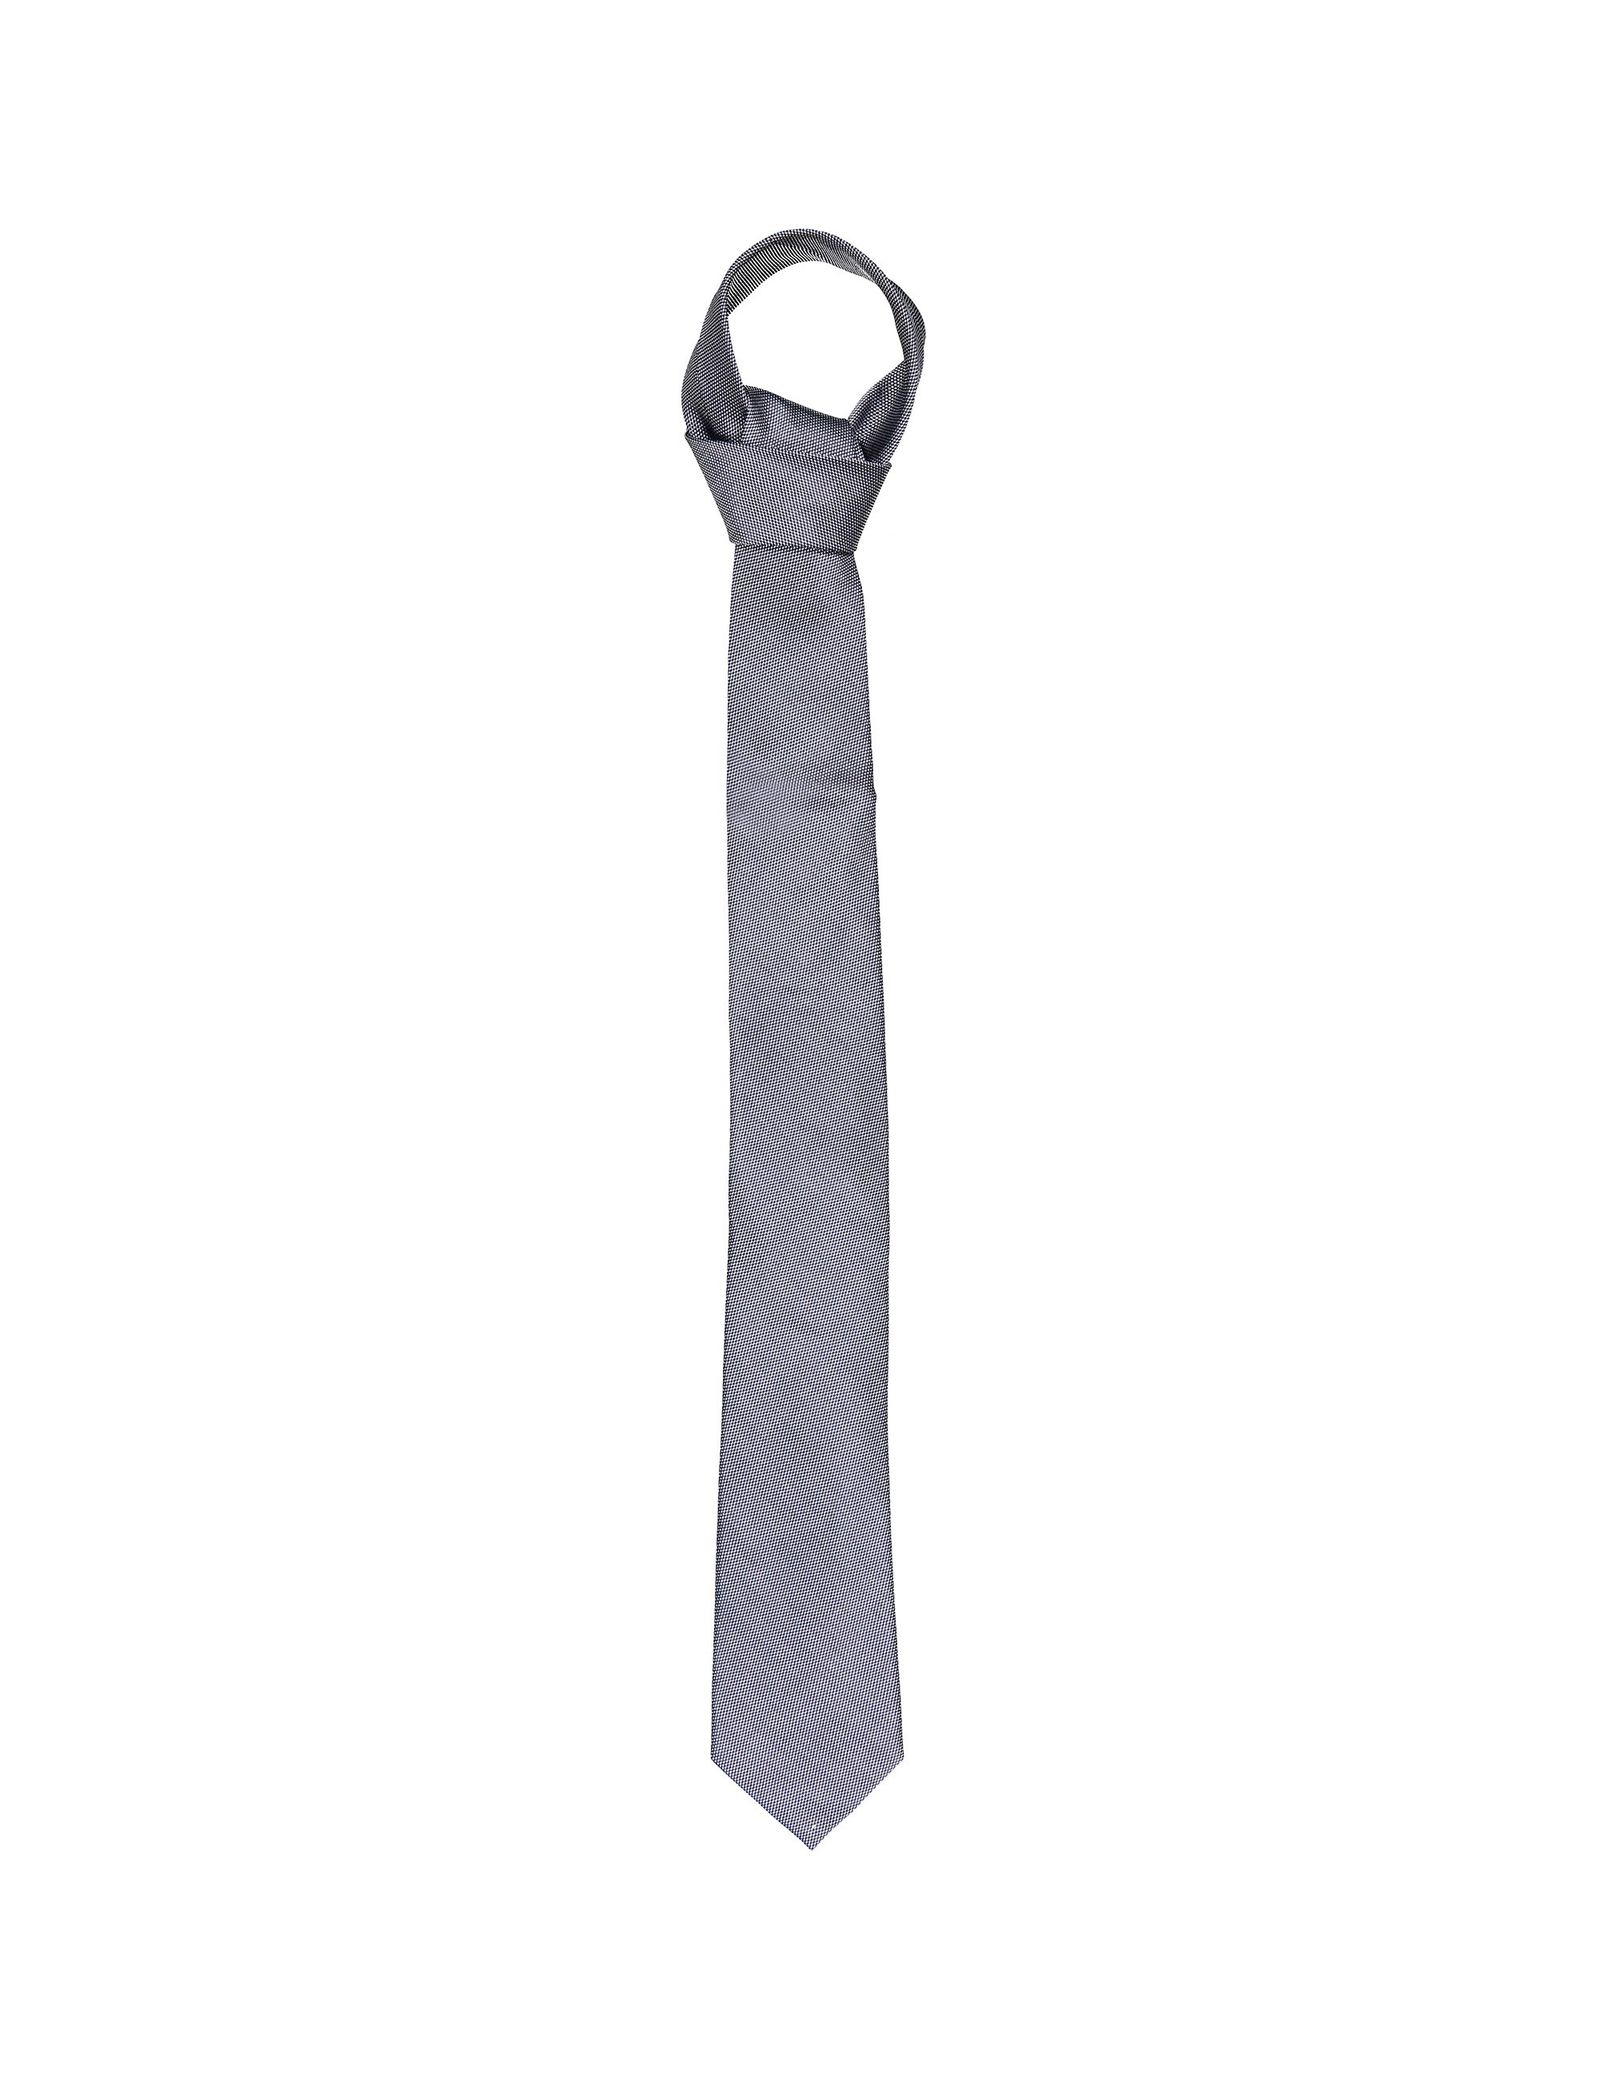 کراوات ابریشم طرح دار مردانه - یوپیم تک سایز - طوسي - 2